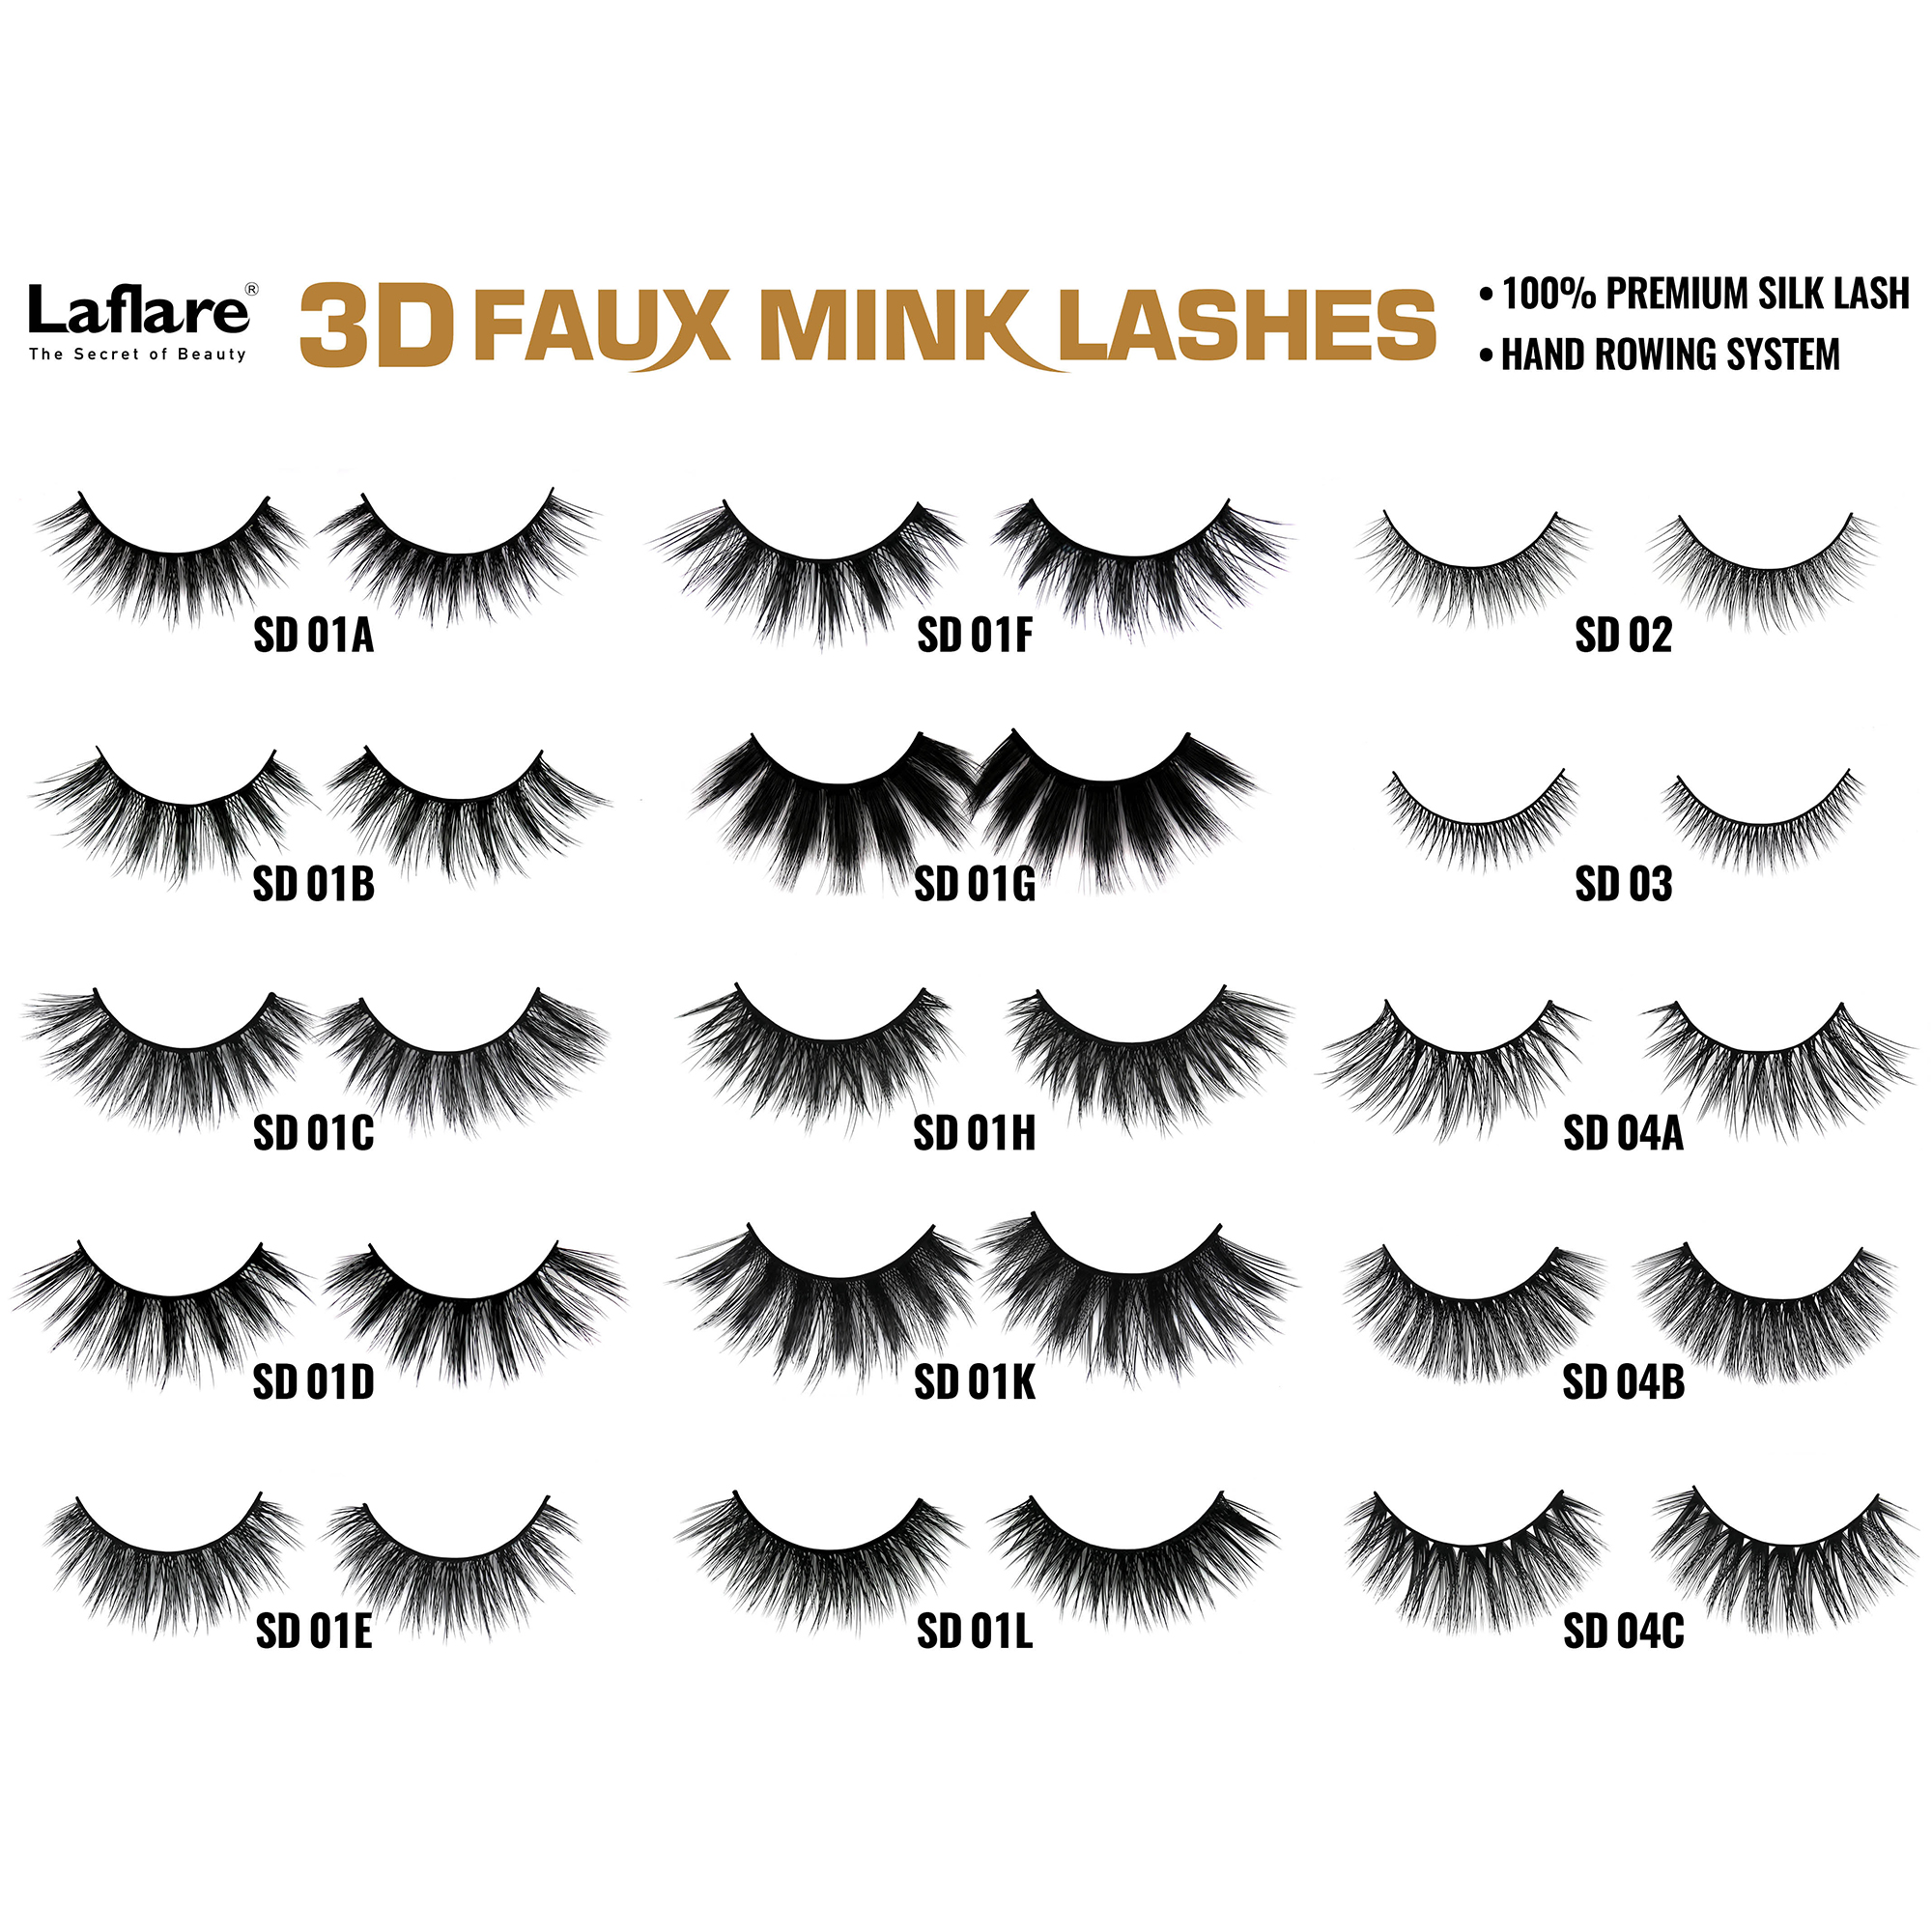 LAFLARE 3d Faux Mink Lashes - SD01H